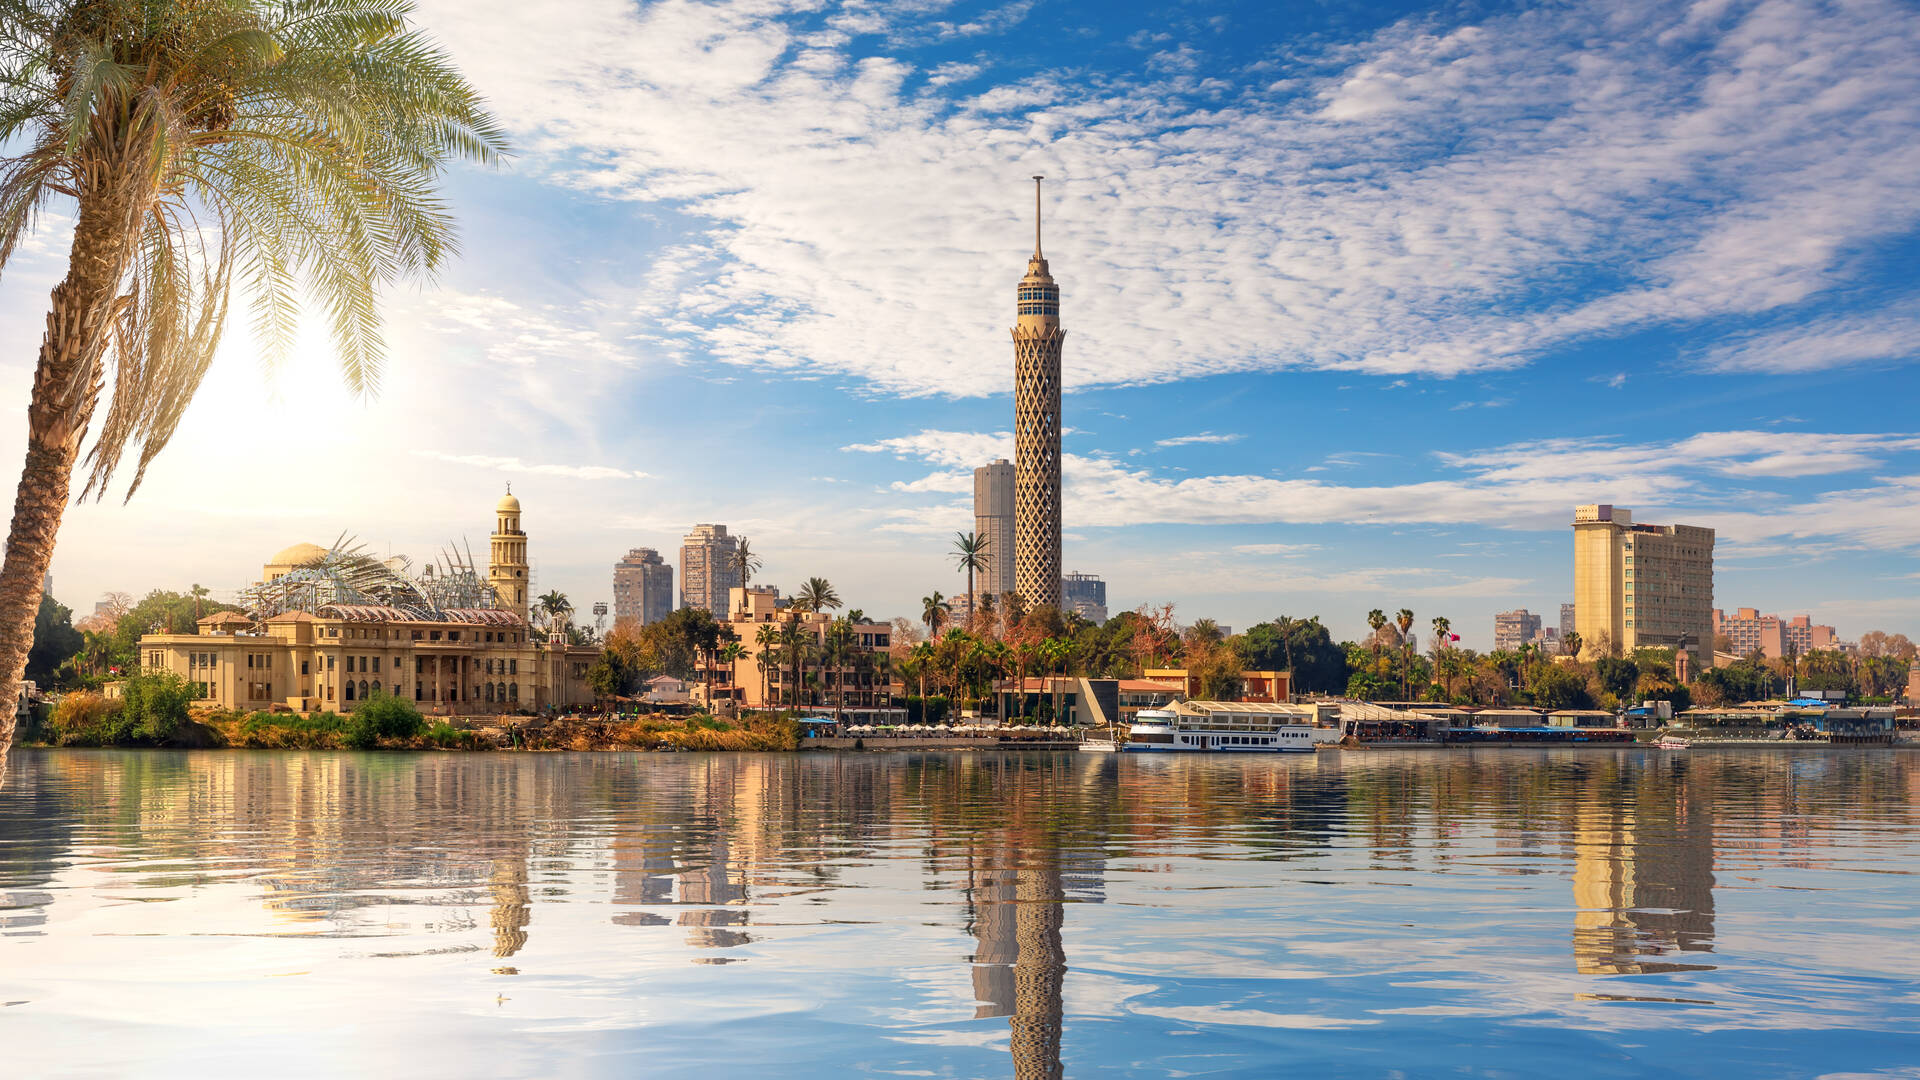 Kairo (Cairo), Ägypten